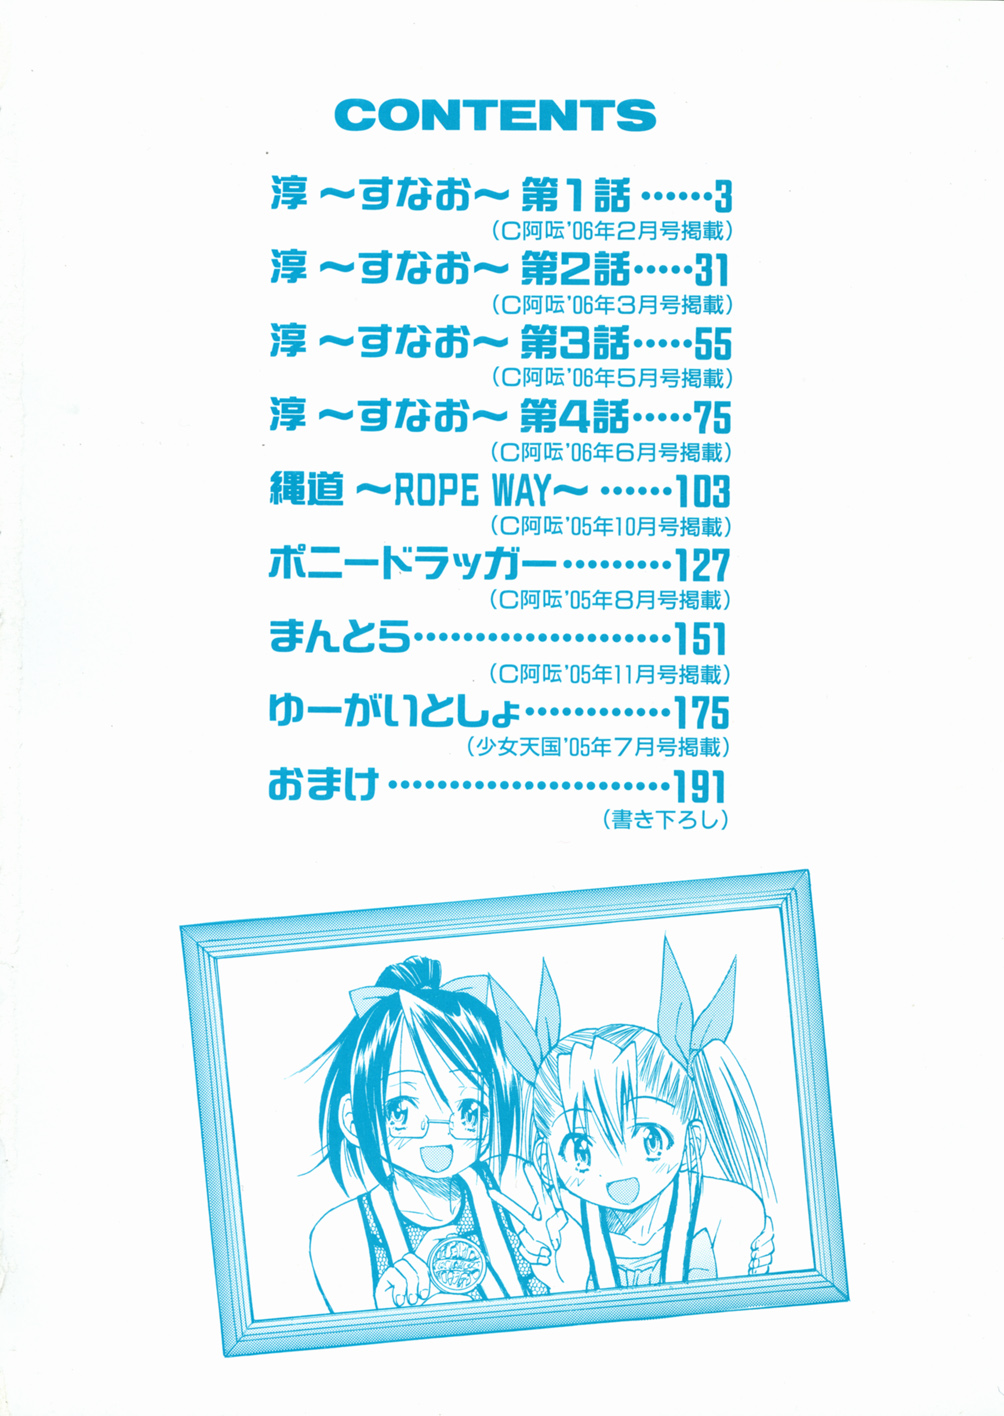 [Inoue Yoshihisa] Sunao page 6 full